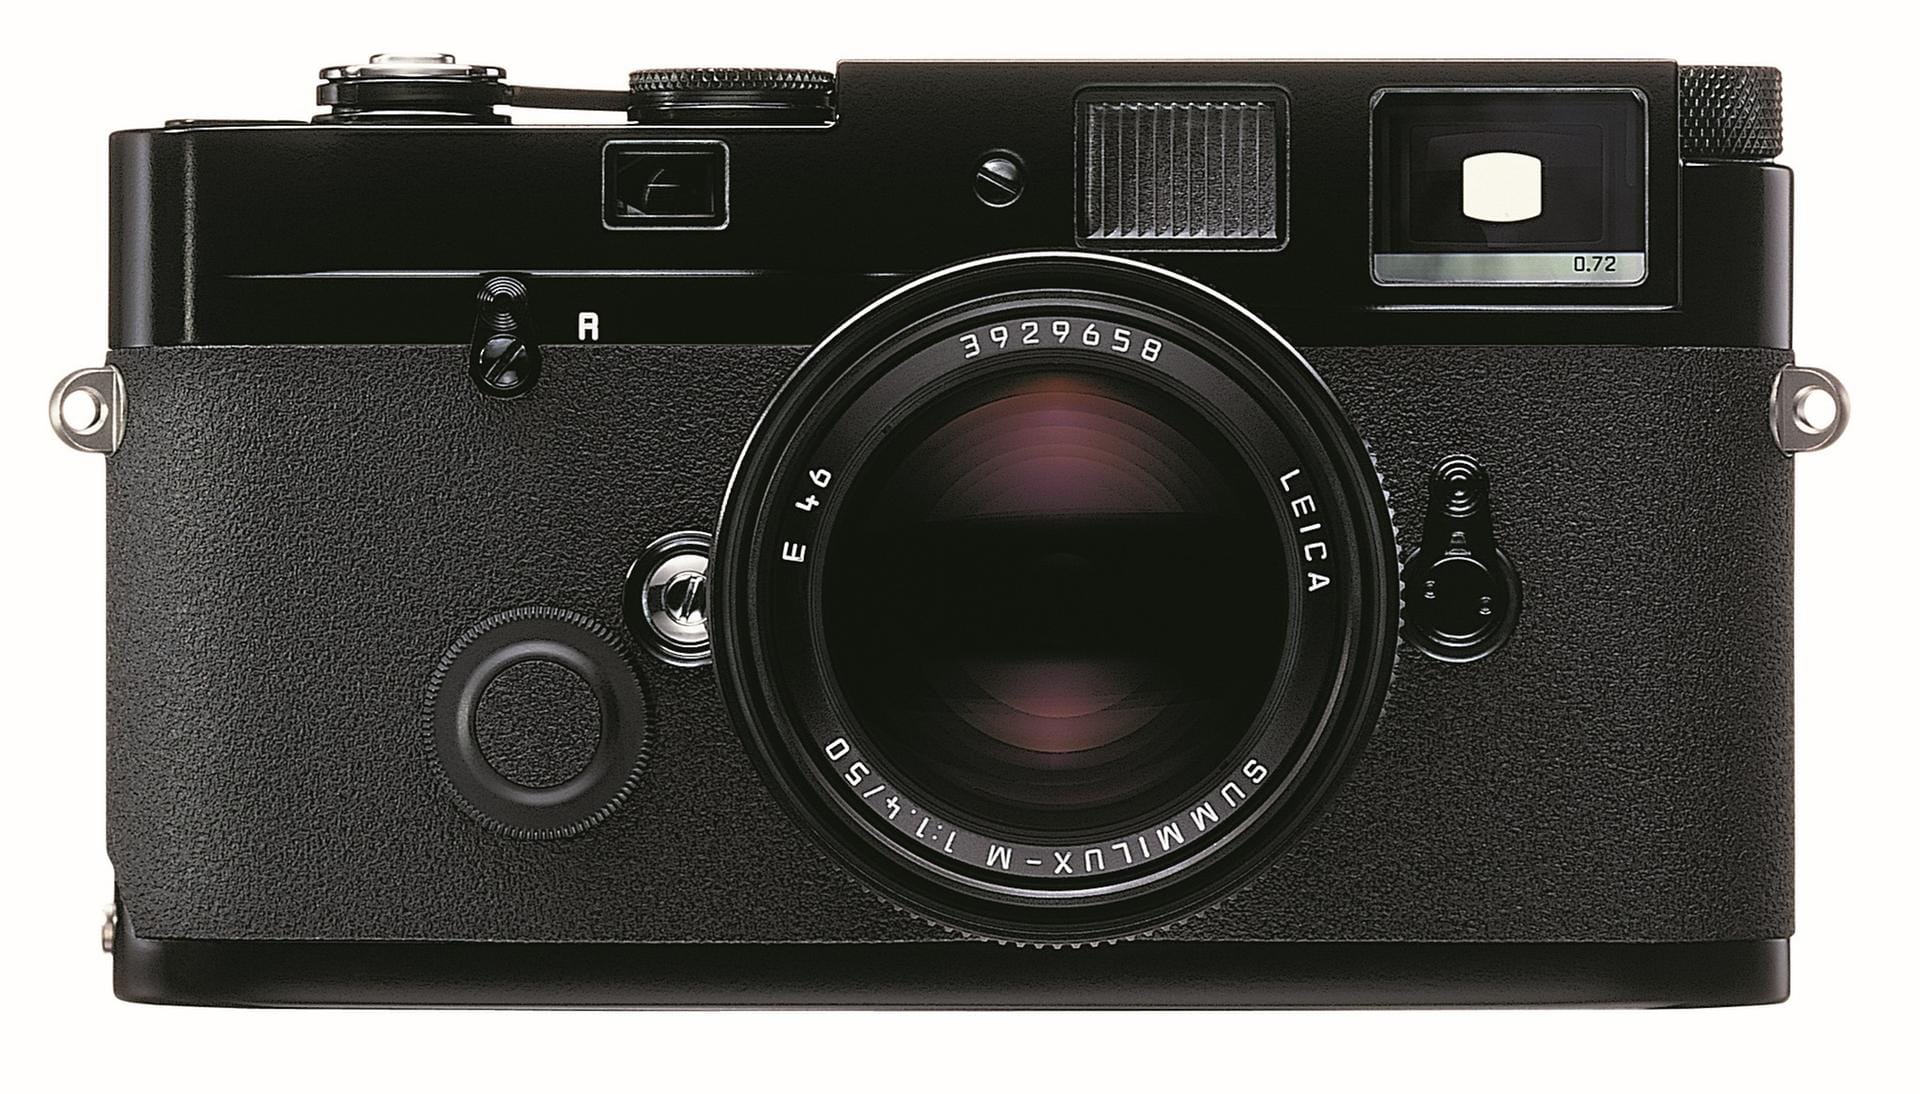 Die seit 2003 gebaute, rein mechanisch funktionierende Leica MP in schwarz ist eine extrem robuste, präzise Kamera ohne jede Automatikfunktionen, aber mit hohem Wert. Sie kostet heute etwa 4000 Euro.